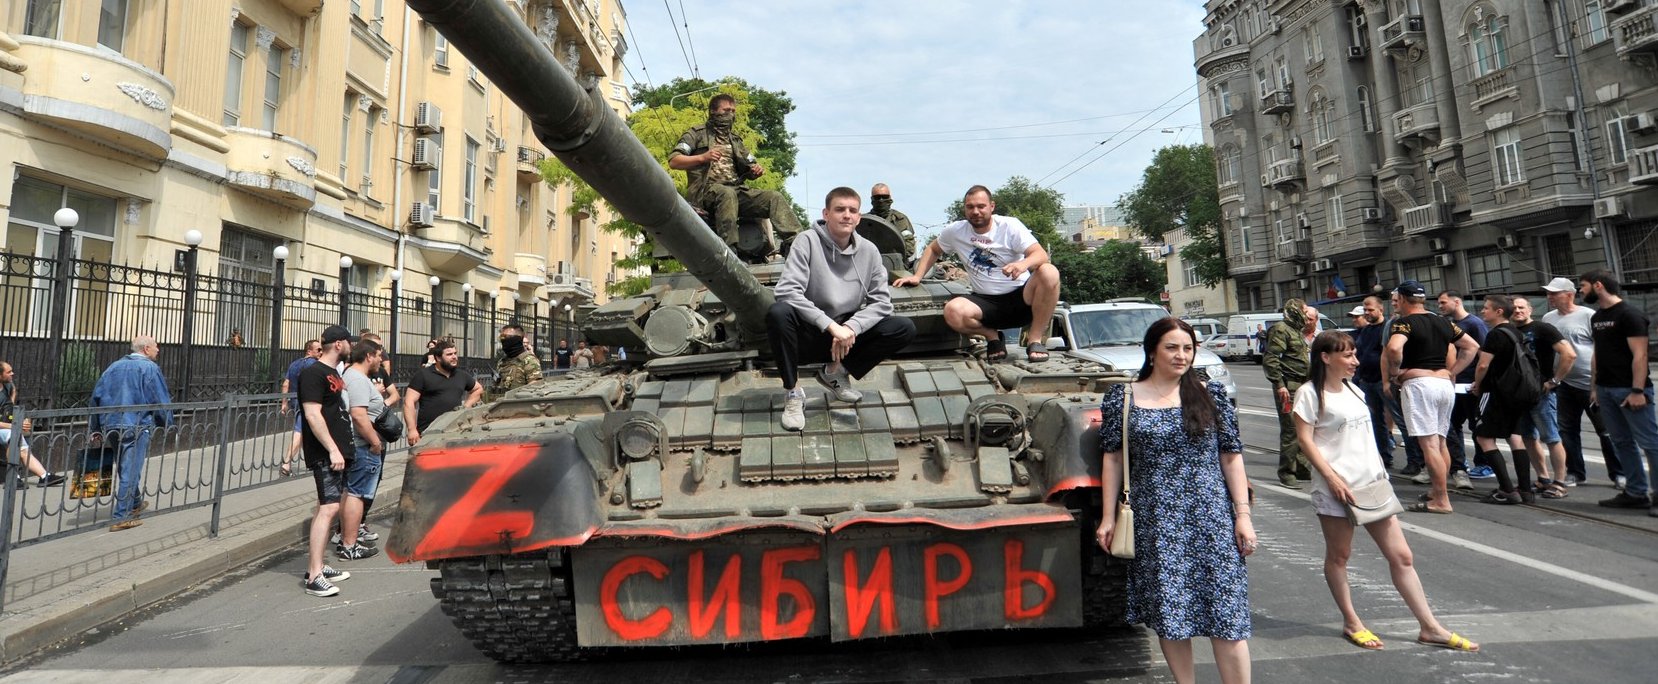 Elesett az orosz Rosztov-Don: képeken, ahogy a lázadó Wagner csoport a városban járőrözik